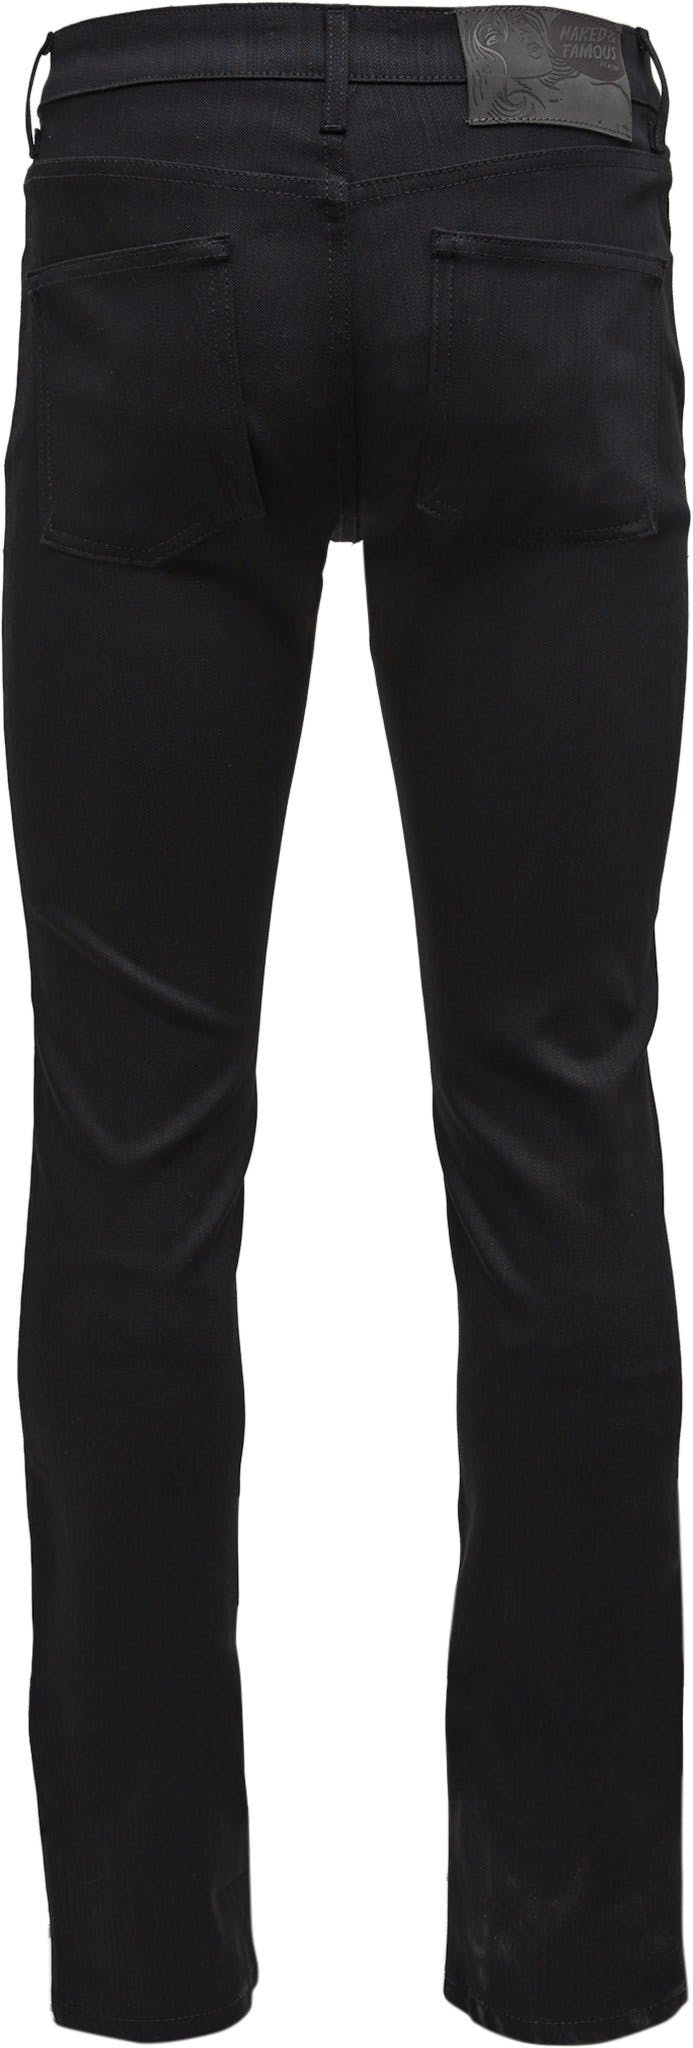 Numéro de l'image de la galerie de produits 4 pour le produit Jeans Skinny Guy - Black Power Stretch - Homme